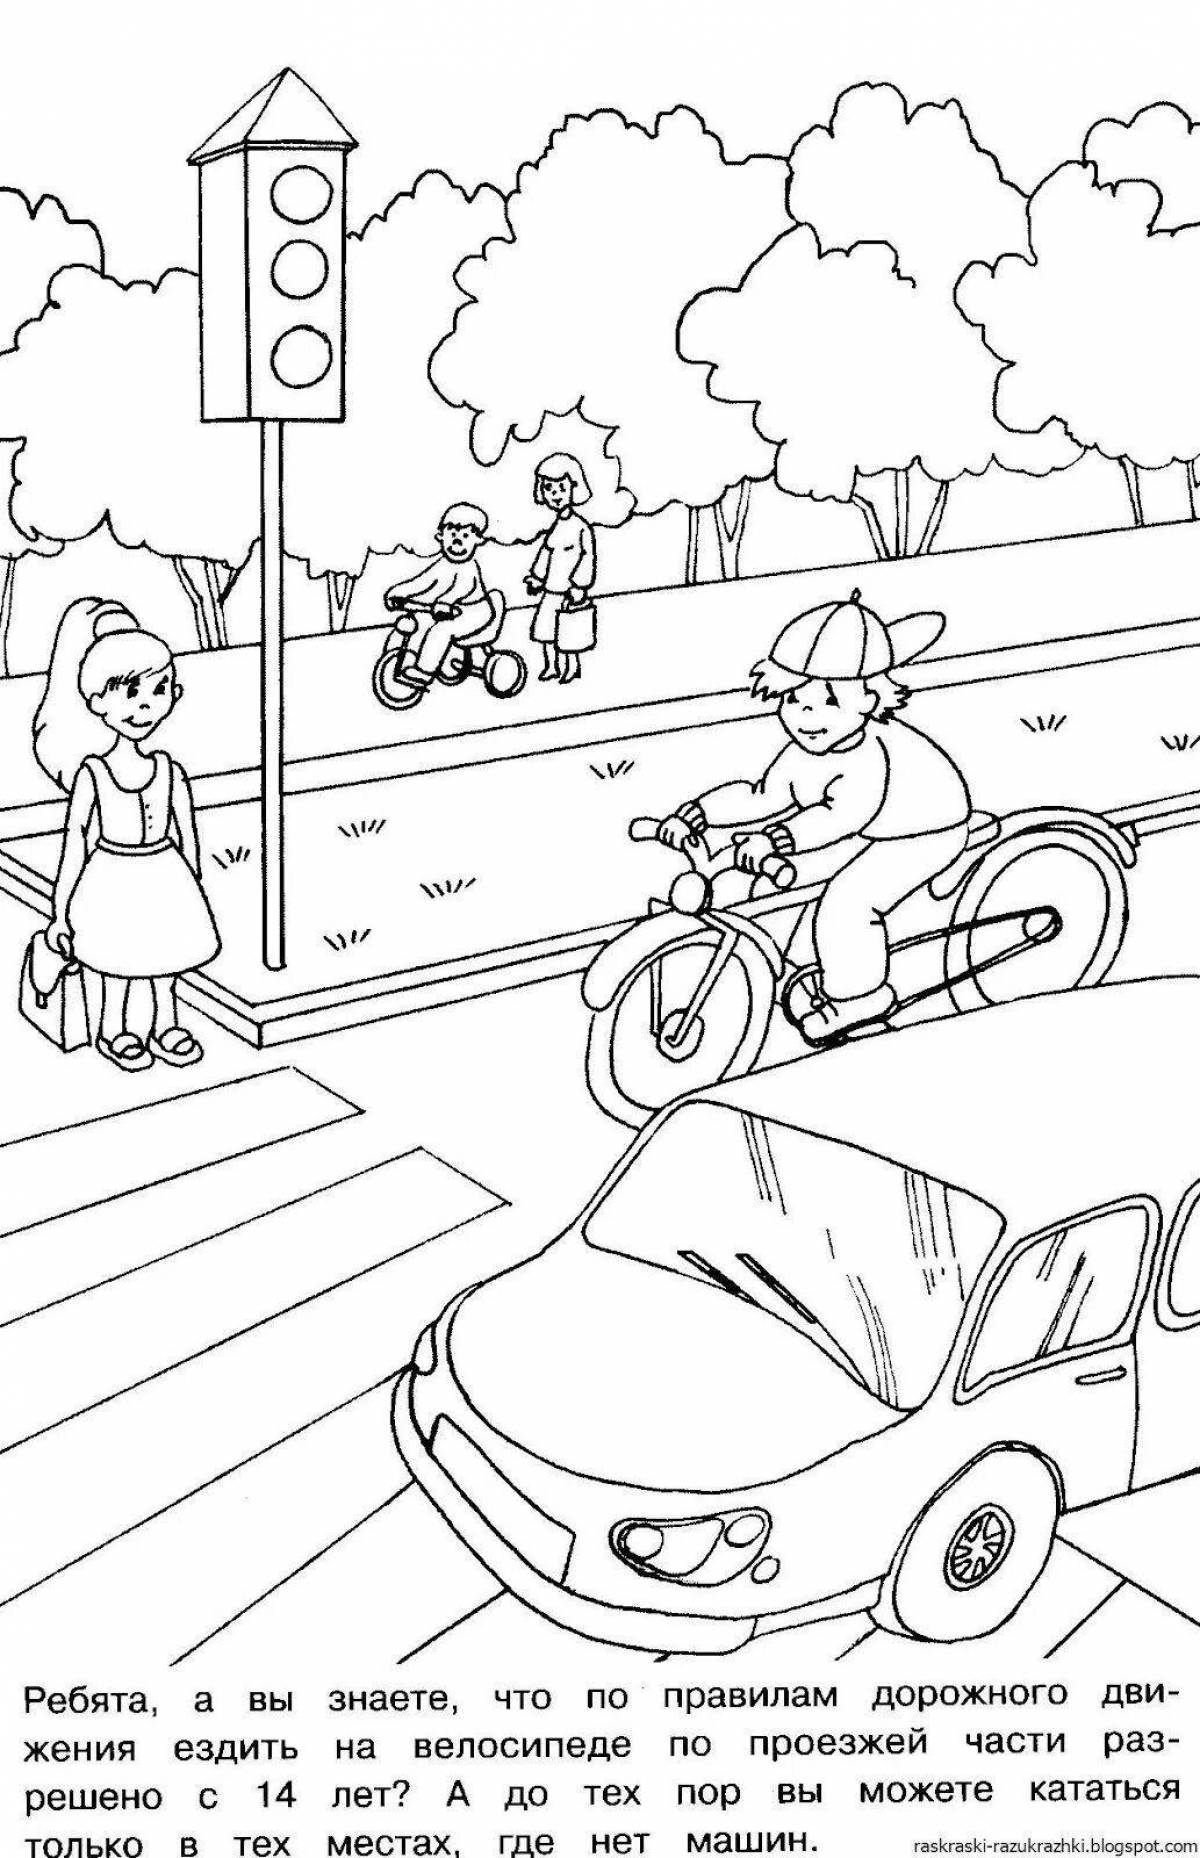 Привлекательная раскраска с правилами дорожного движения в детском саду